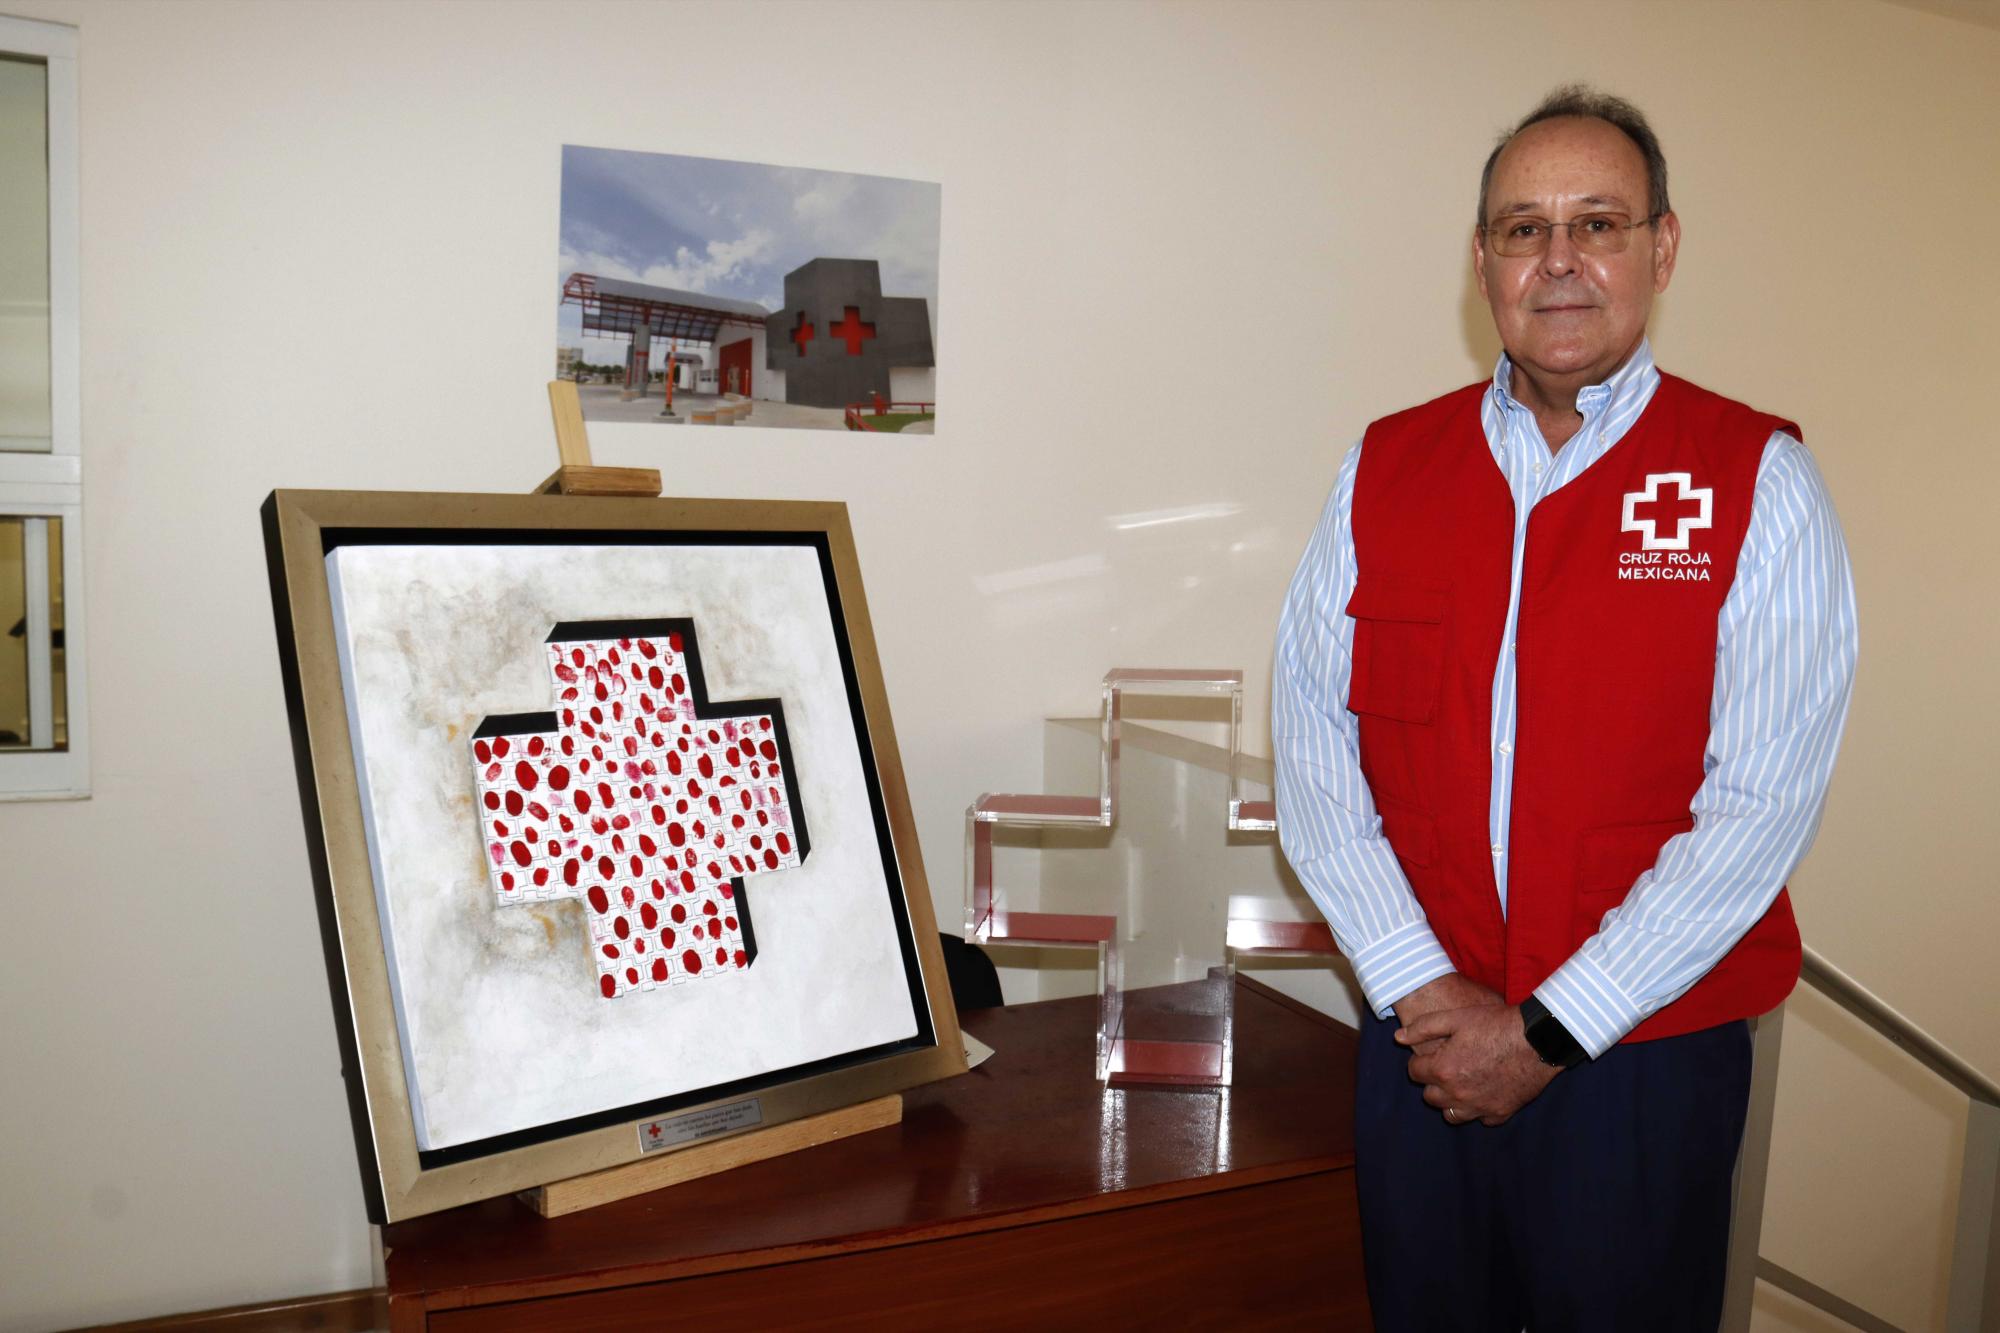 $!“La Cruz Roja de Saltillo tuvo la suerte de estar en Saltillo”, dice el presidente del consejo de la Cruz Roja, Arturo López Alanís.